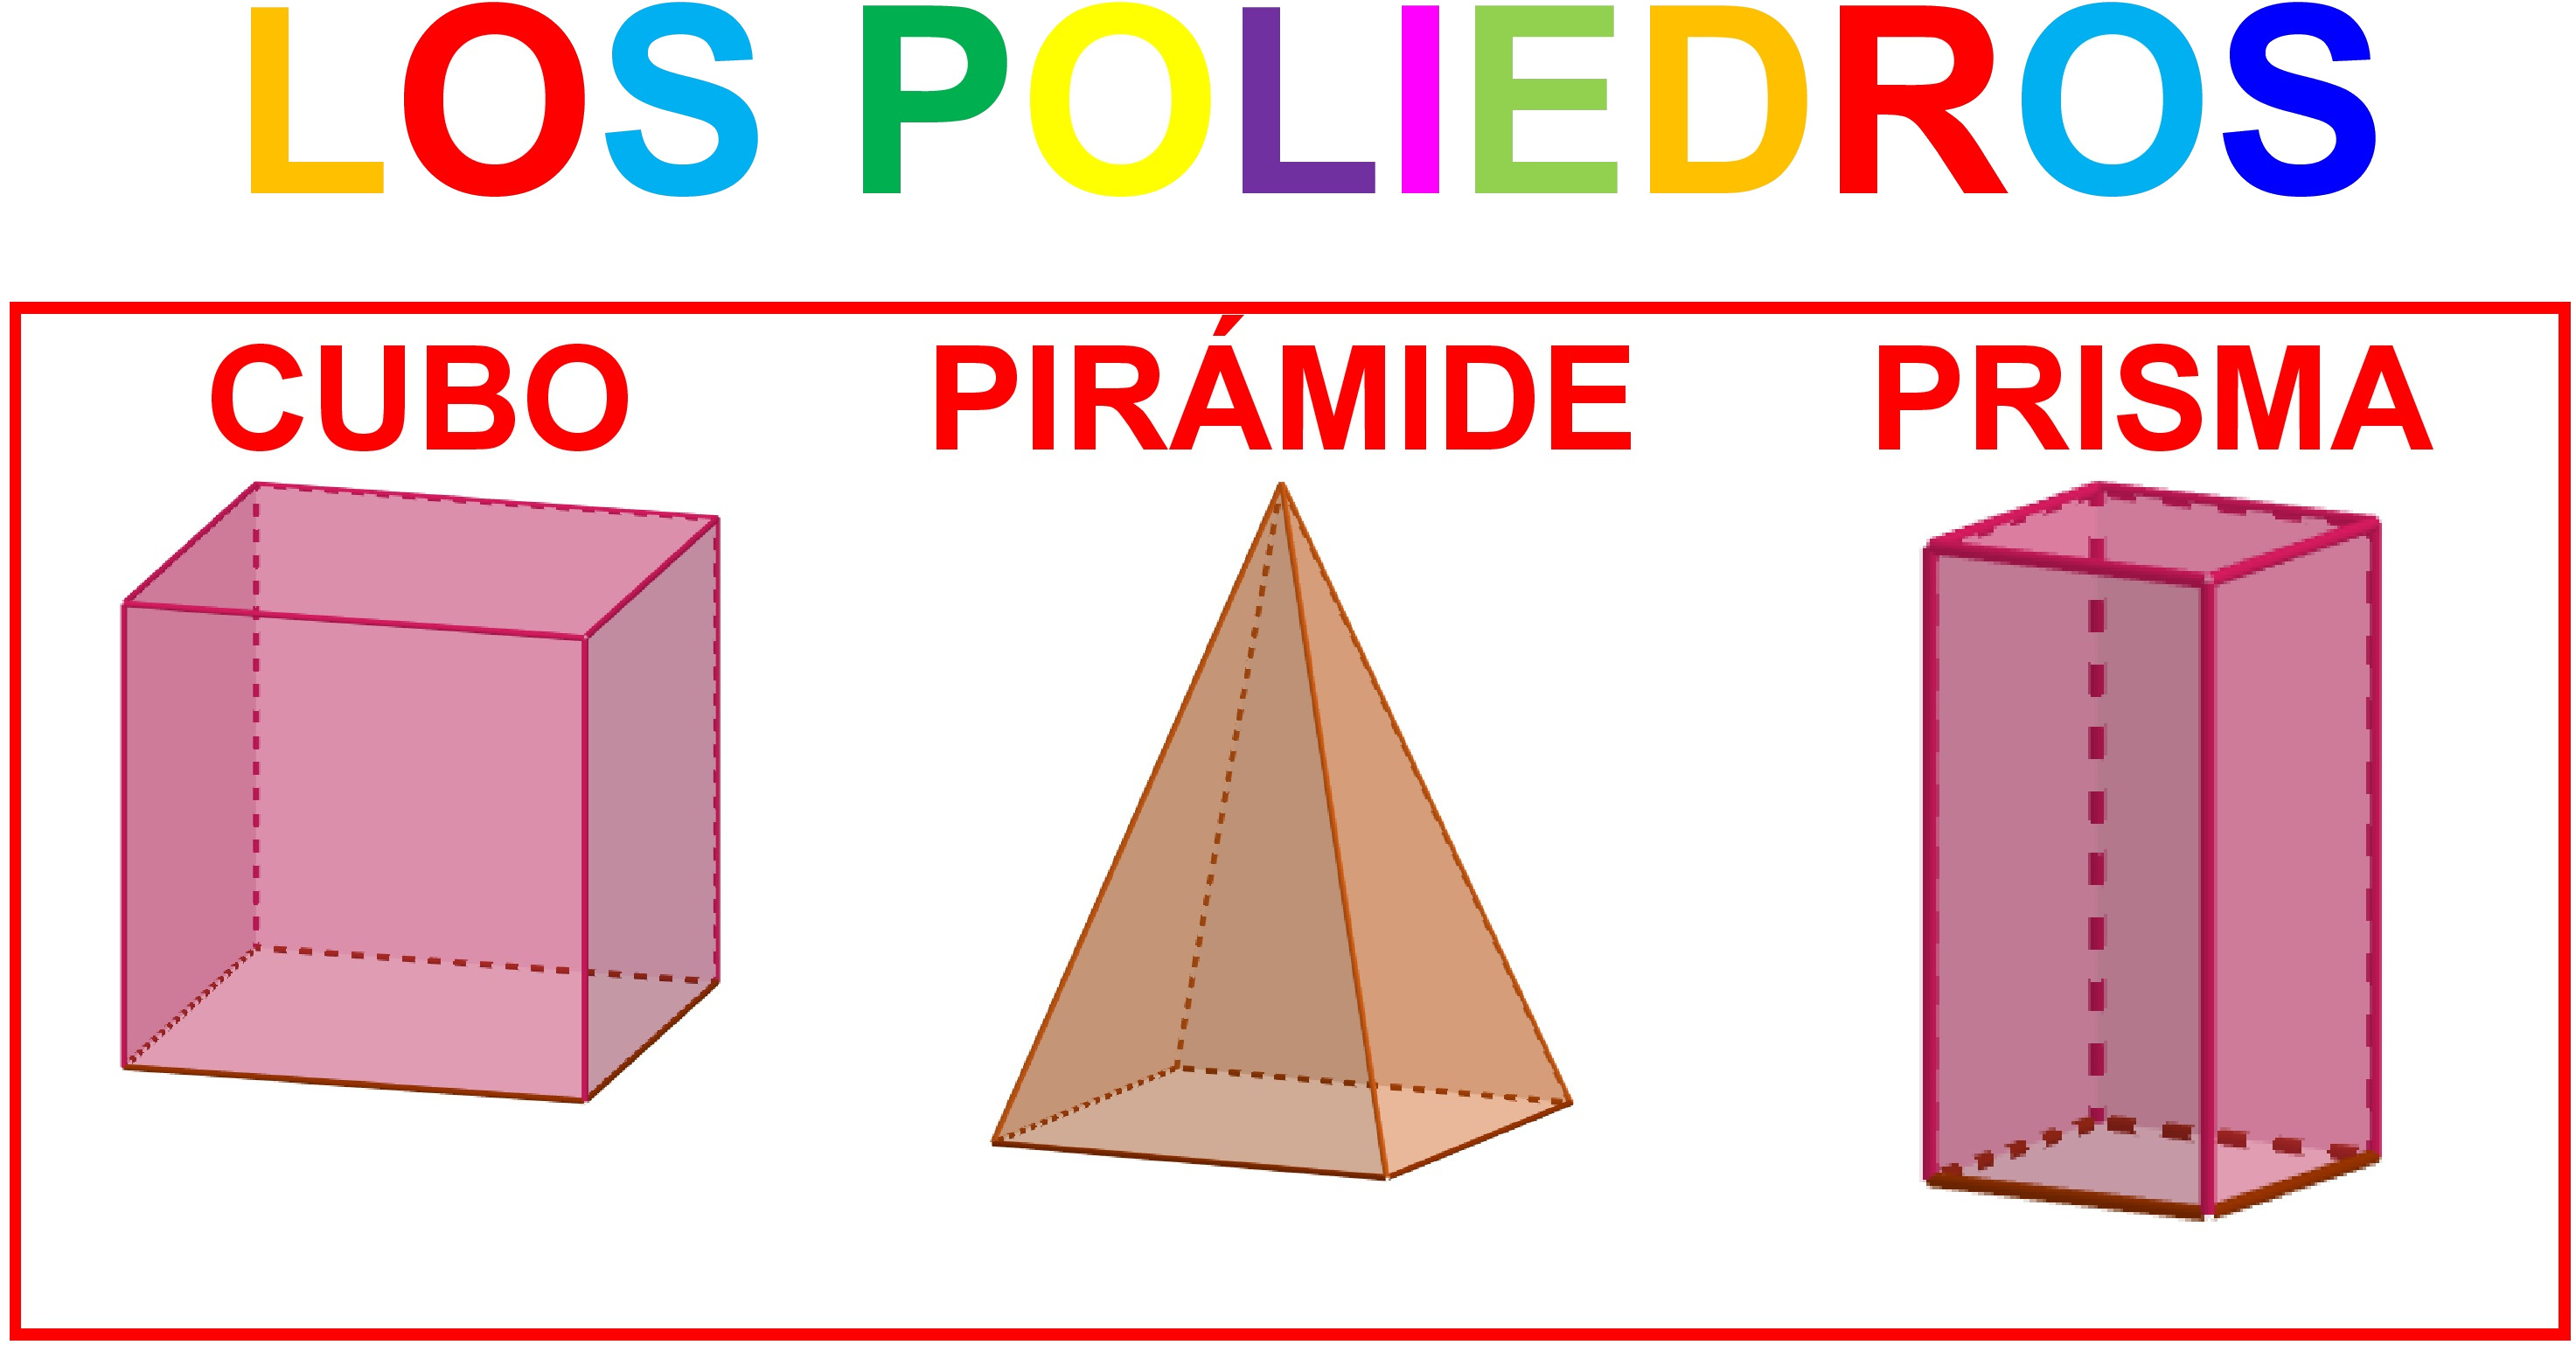 La imagen muestra un cubo, una pirámide y un prisma con sus nombres